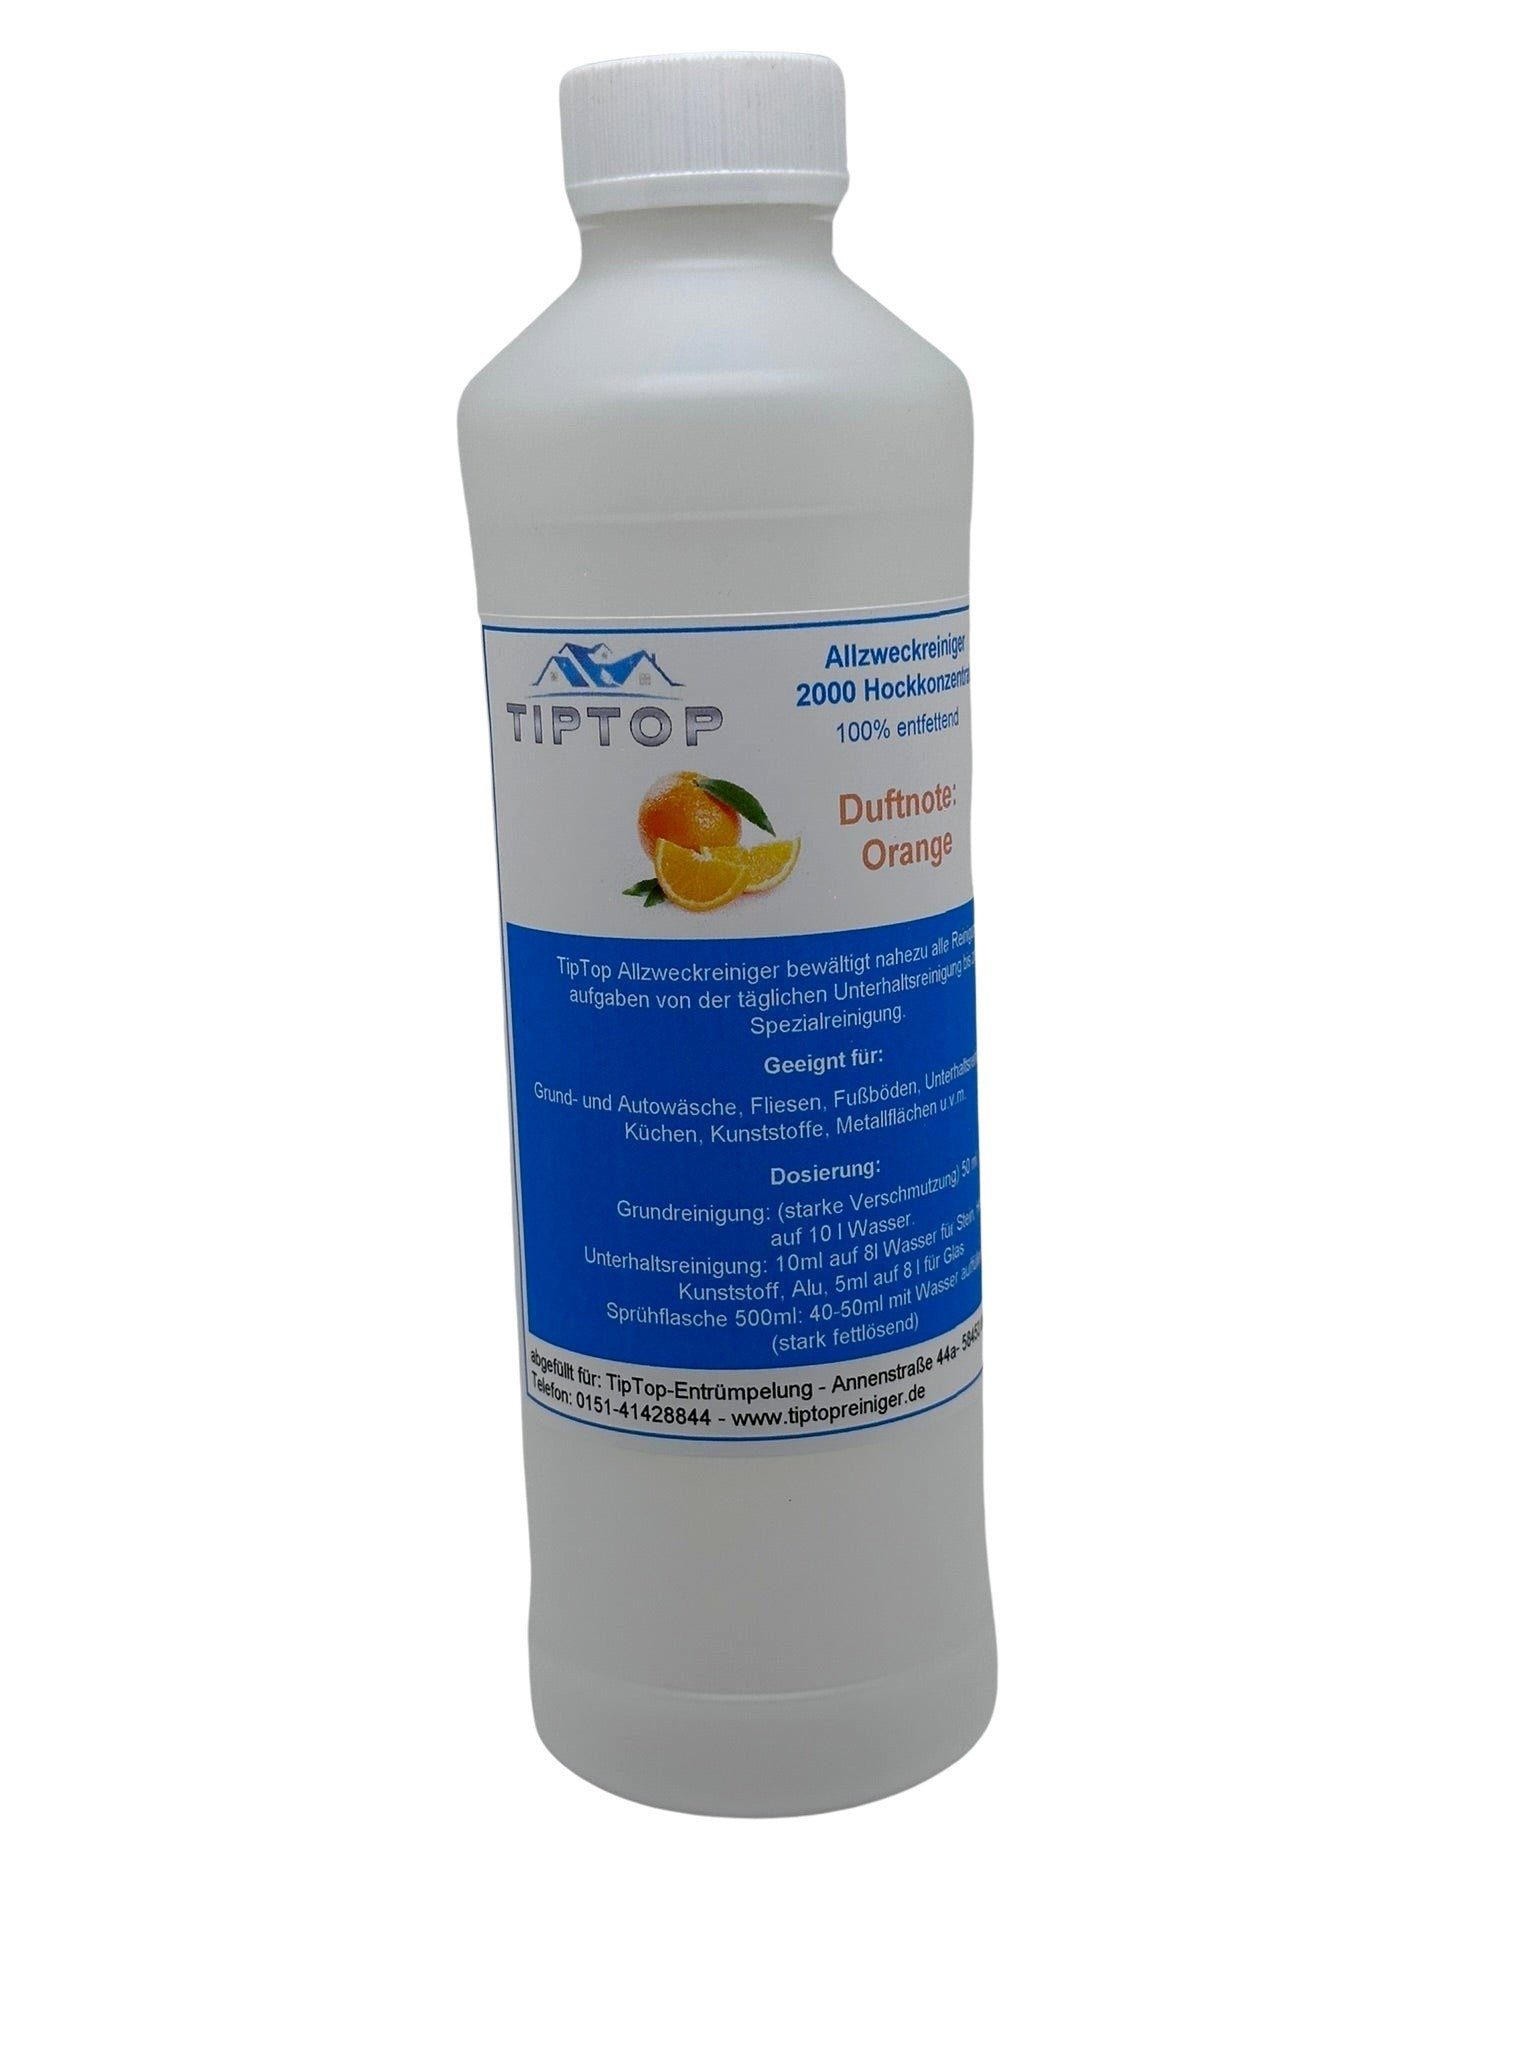 TIPTOP Raumduft Reinigung Allzweckreiniger Konzentrat 500 ml (Verschiedene Duftnoten, Apfel, Cool neutral ohne Duft, Orange, Pfirsich, Zitrone)